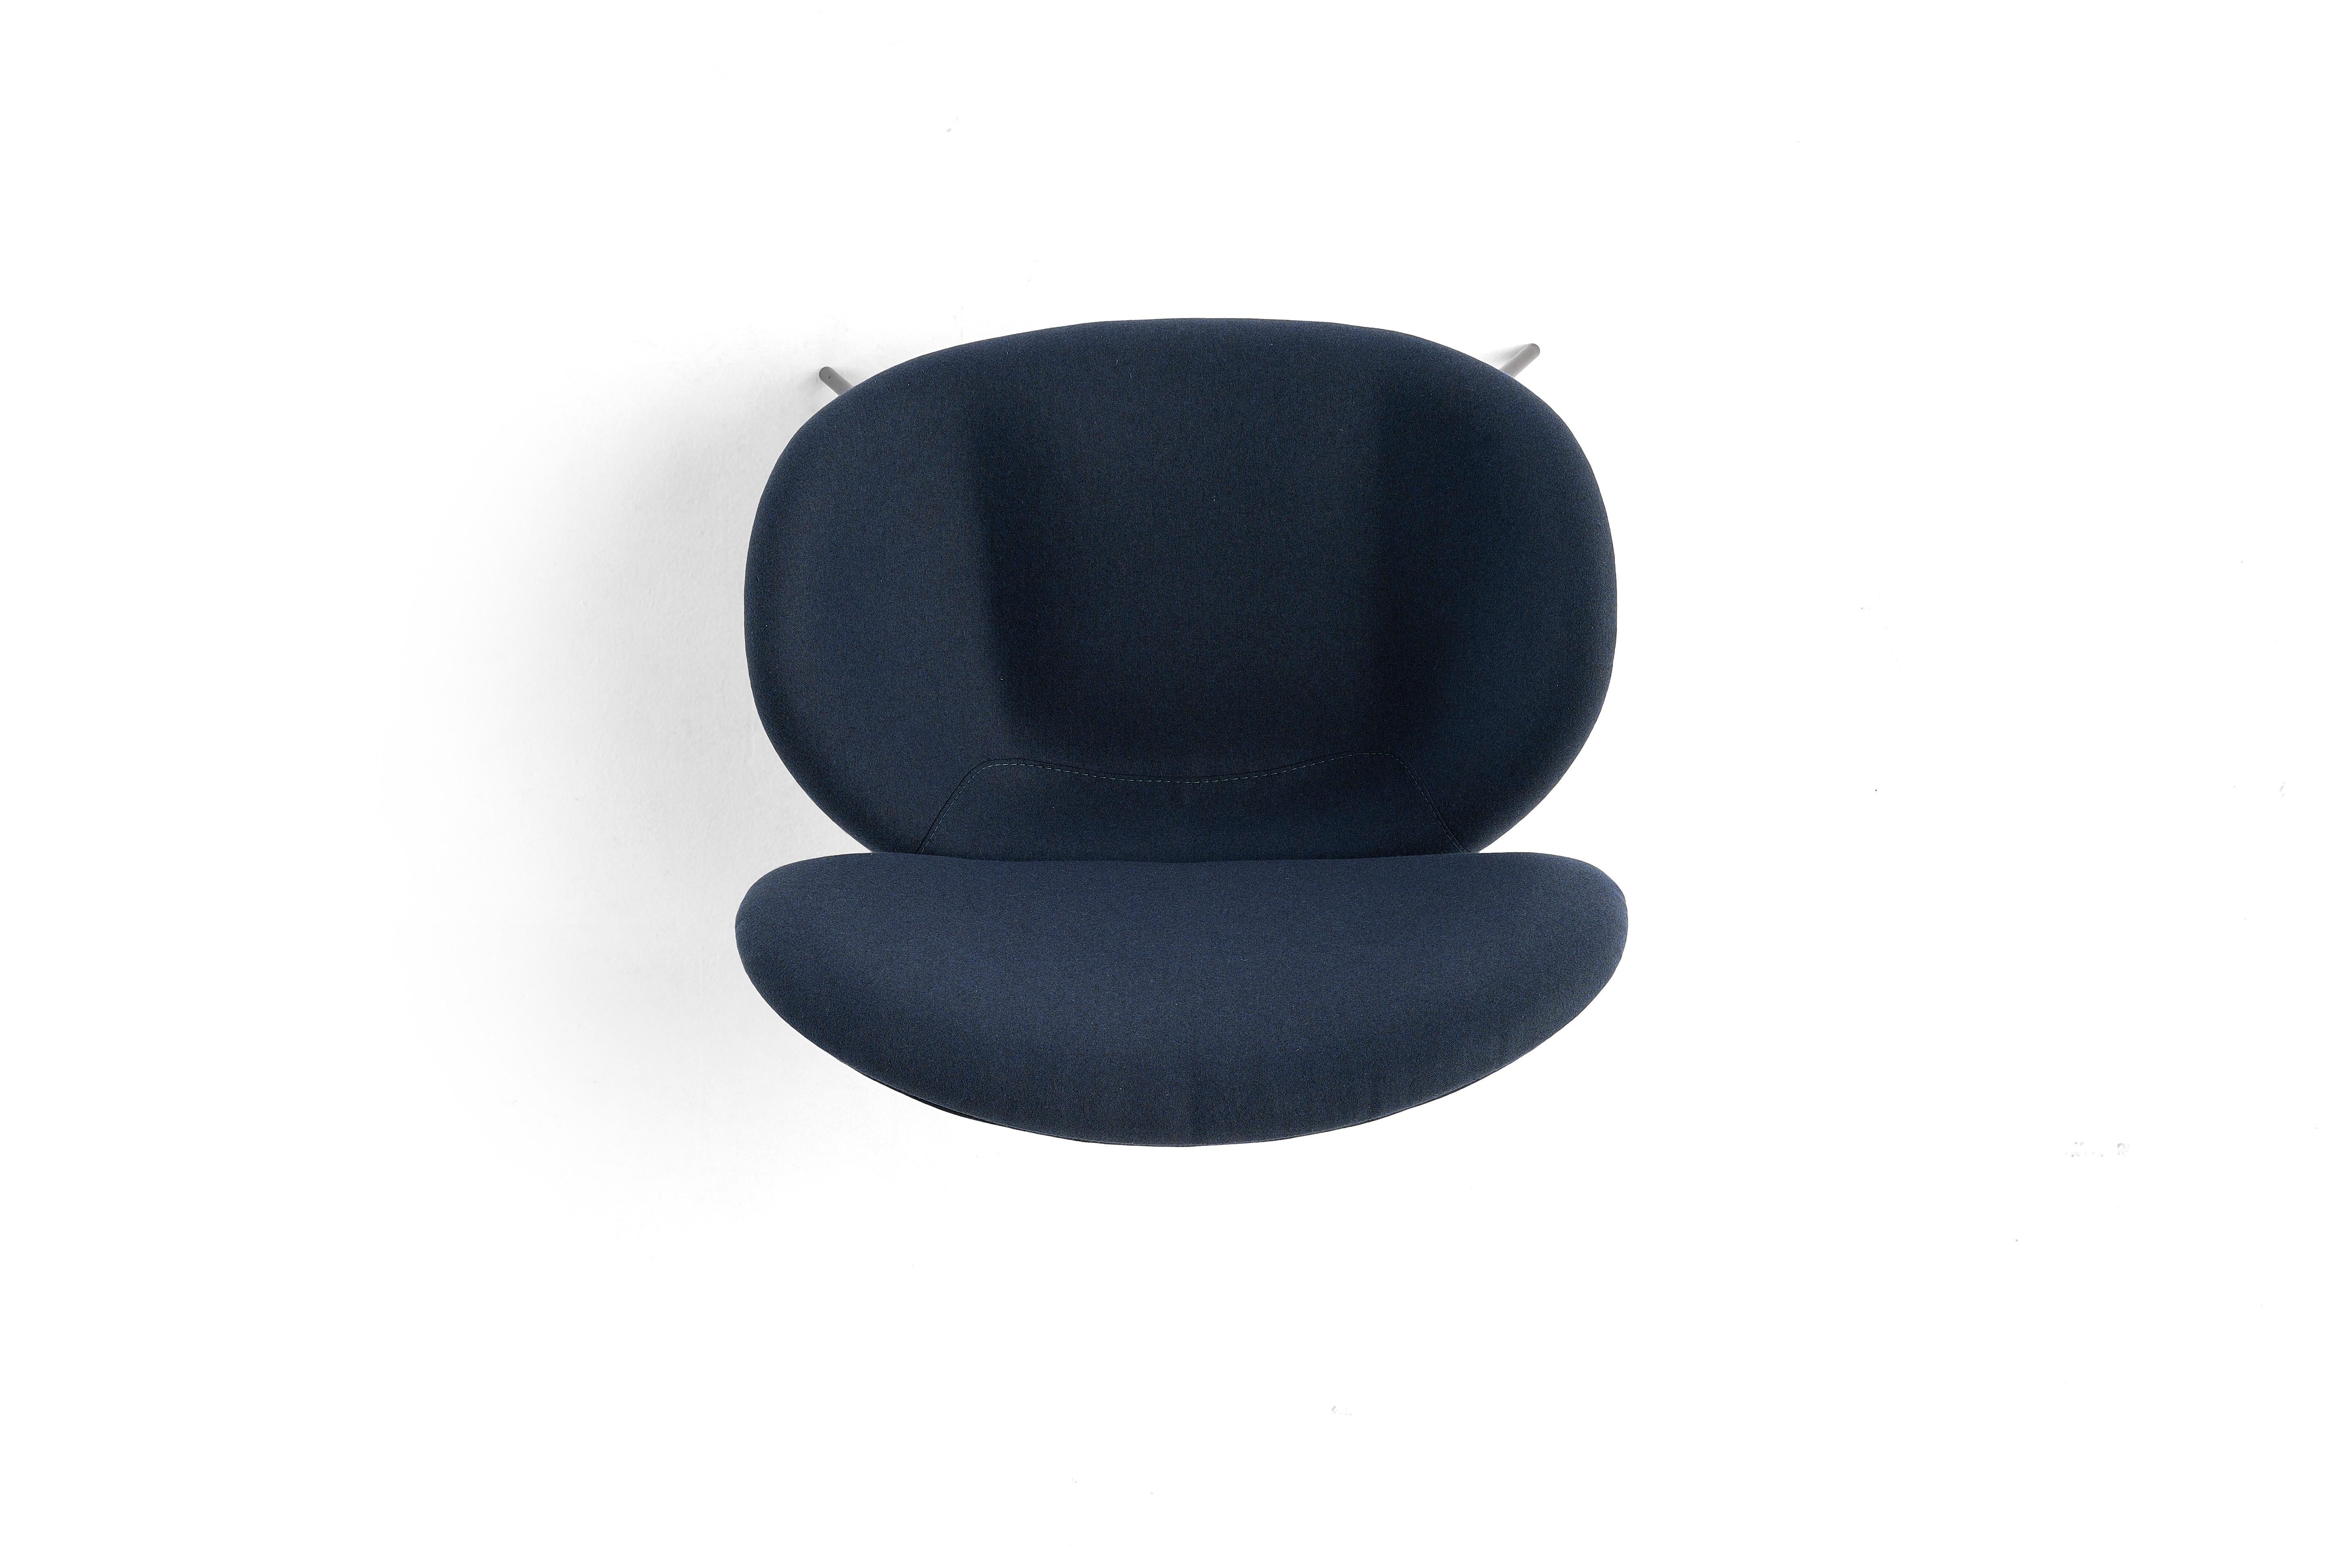 Amura 'Uchiwa' Chair in Blue Fabric by Andrea Quaglio & Manuela Simonelli In New Condition For Sale In GRUMO APPULA (BA), IT